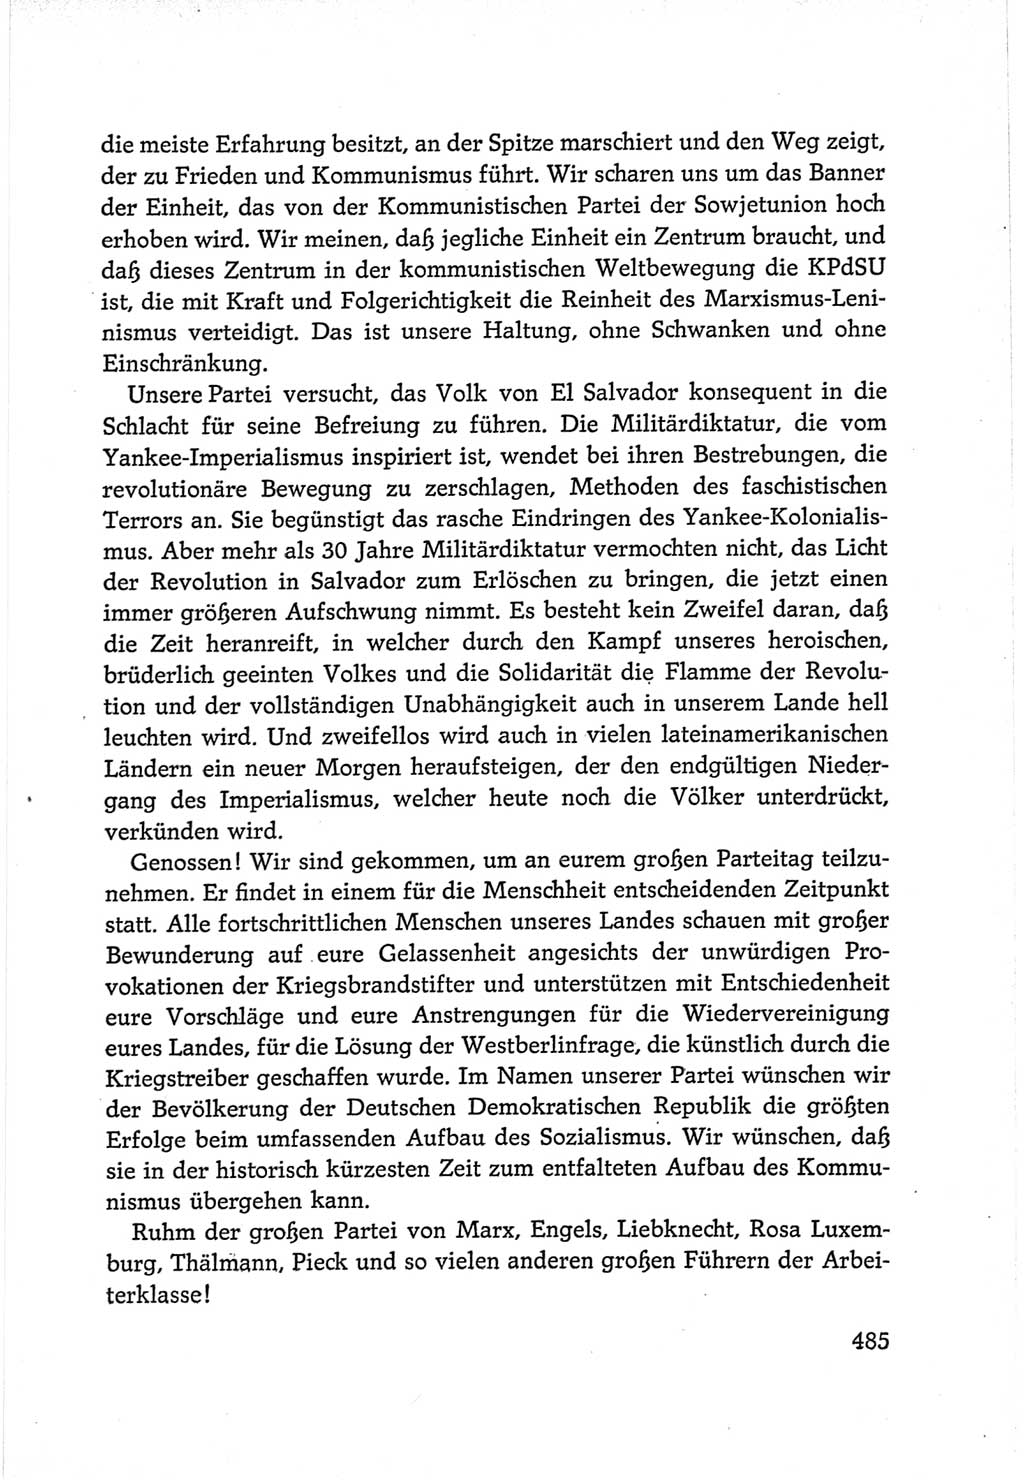 Protokoll der Verhandlungen des Ⅵ. Parteitages der Sozialistischen Einheitspartei Deutschlands (SED) [Deutsche Demokratische Republik (DDR)] 1963, Band Ⅱ, Seite 485 (Prot. Verh. Ⅵ. PT SED DDR 1963, Bd. Ⅱ, S. 485)